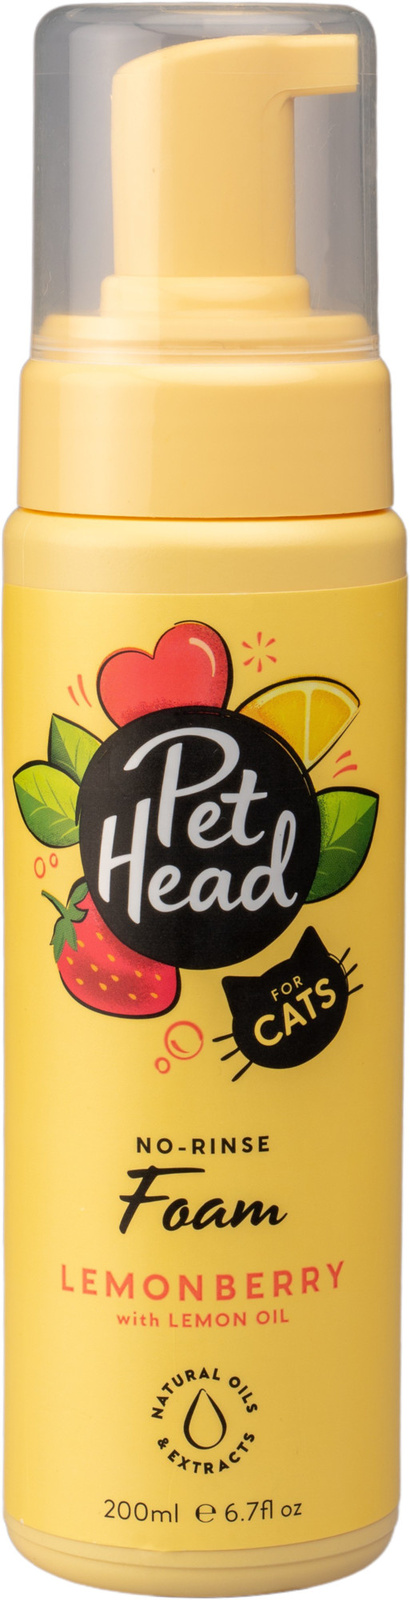 Pet Head очищающая пенка без смывания для шерсти кошек 